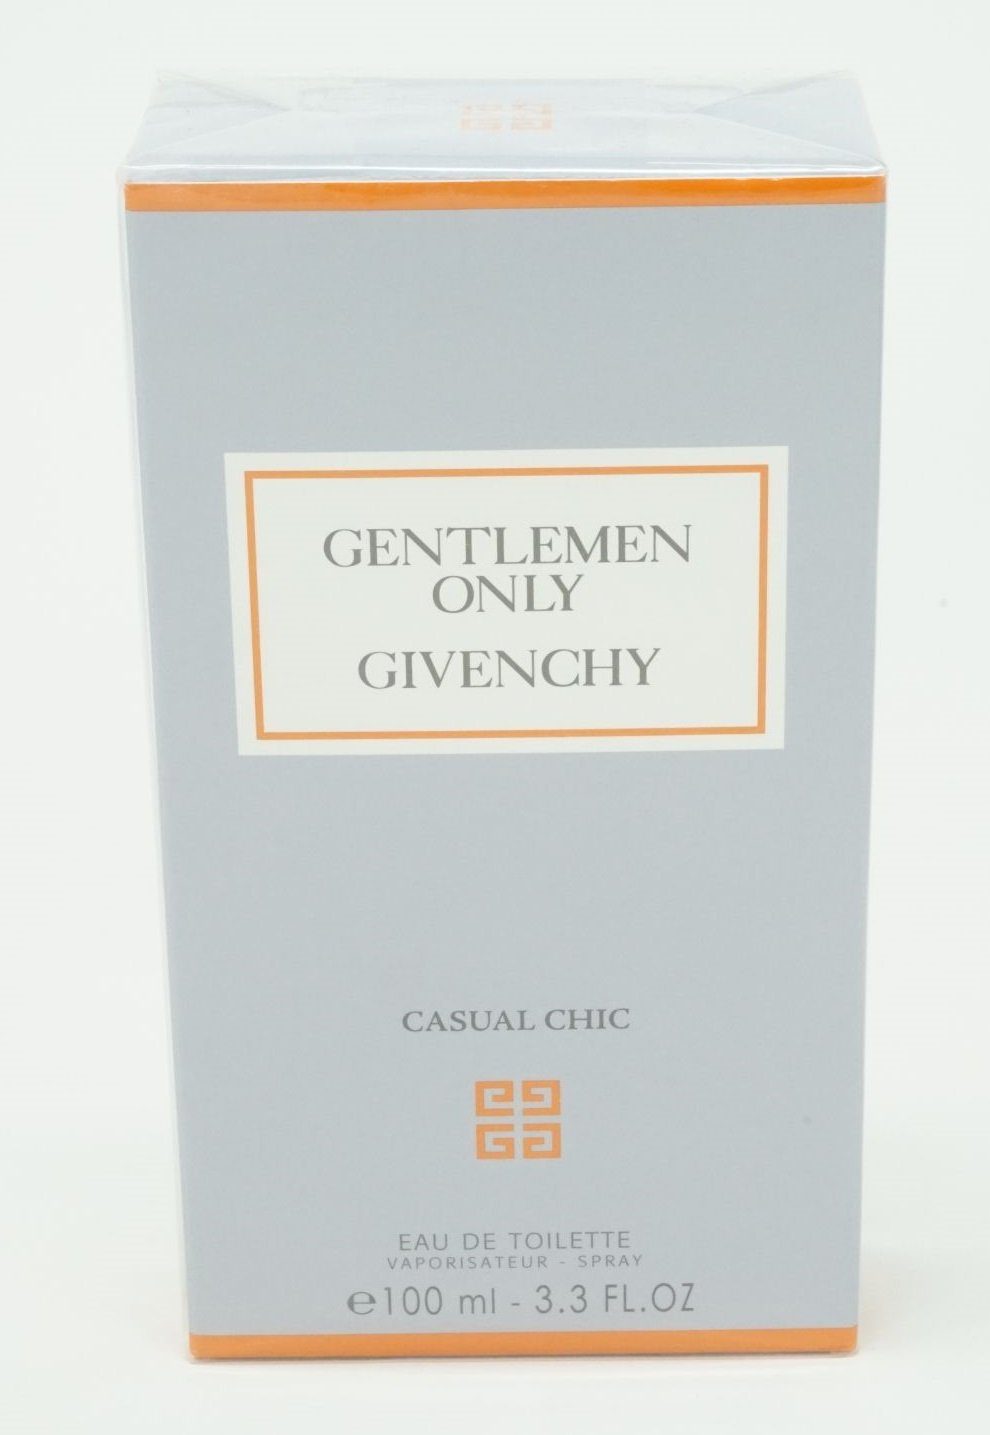 GIVENCHY Eau de Toilette Givenchy Gentleman Only Casual Chic Eau de Toilette 100 ml